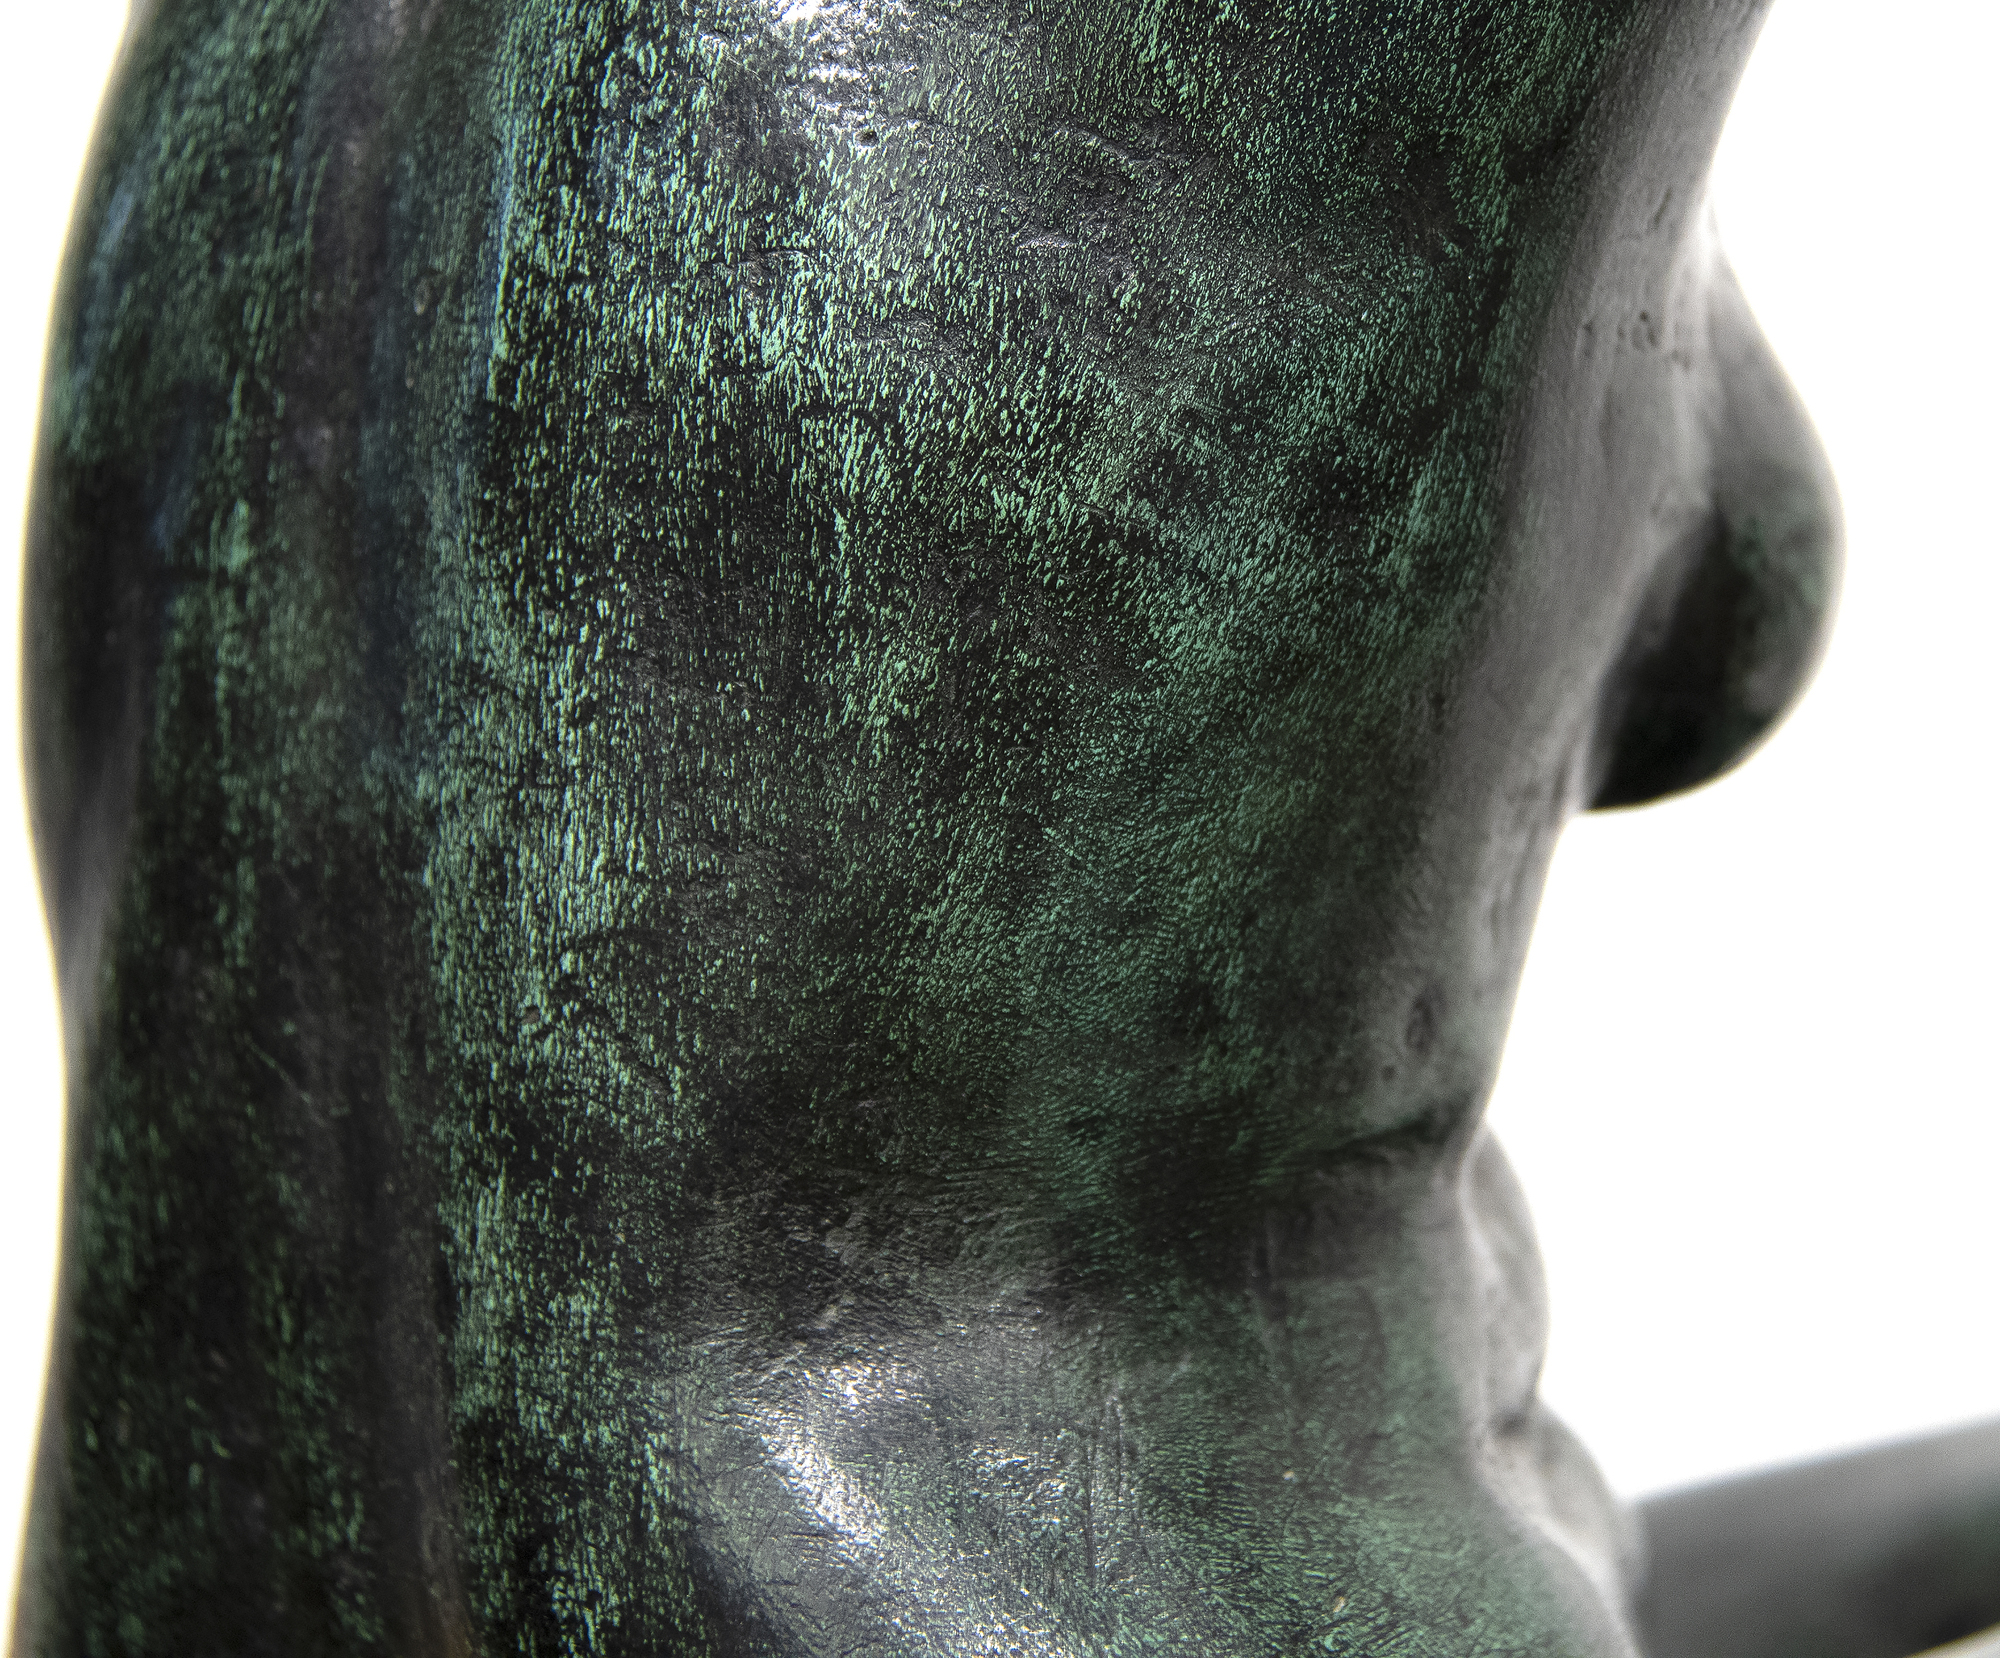 FELIPE CASTANEDA - Mujer Peinandose - bronze - 16 1/4 x 11 3/4 x 11 in.